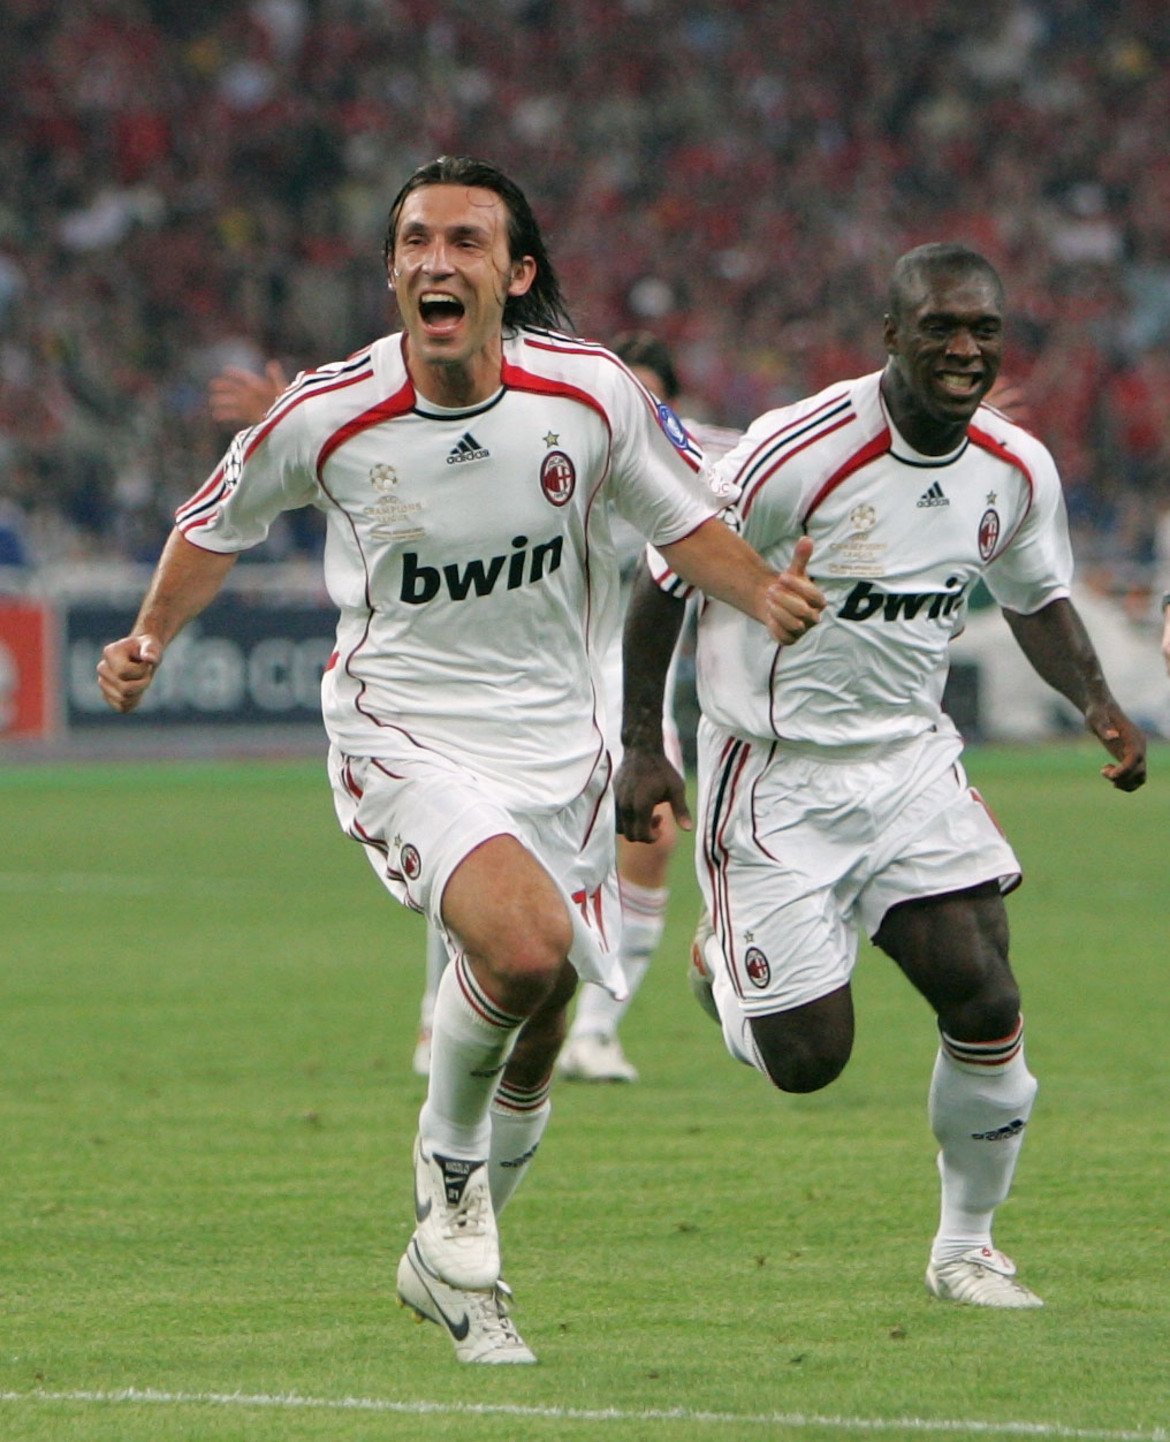 Отмъщението срещу Ливърпул и спечелването на Шампионската лига през 2007 г.

Милан си върна на Ливърпул за онзи обрат в Истанбул и Пирло успя да вземе личен реванш. Изпълнен от него пряк свободен удар се отклони в Индзаги за 1:0 и накрая "росонерите" вдигнаха купата.